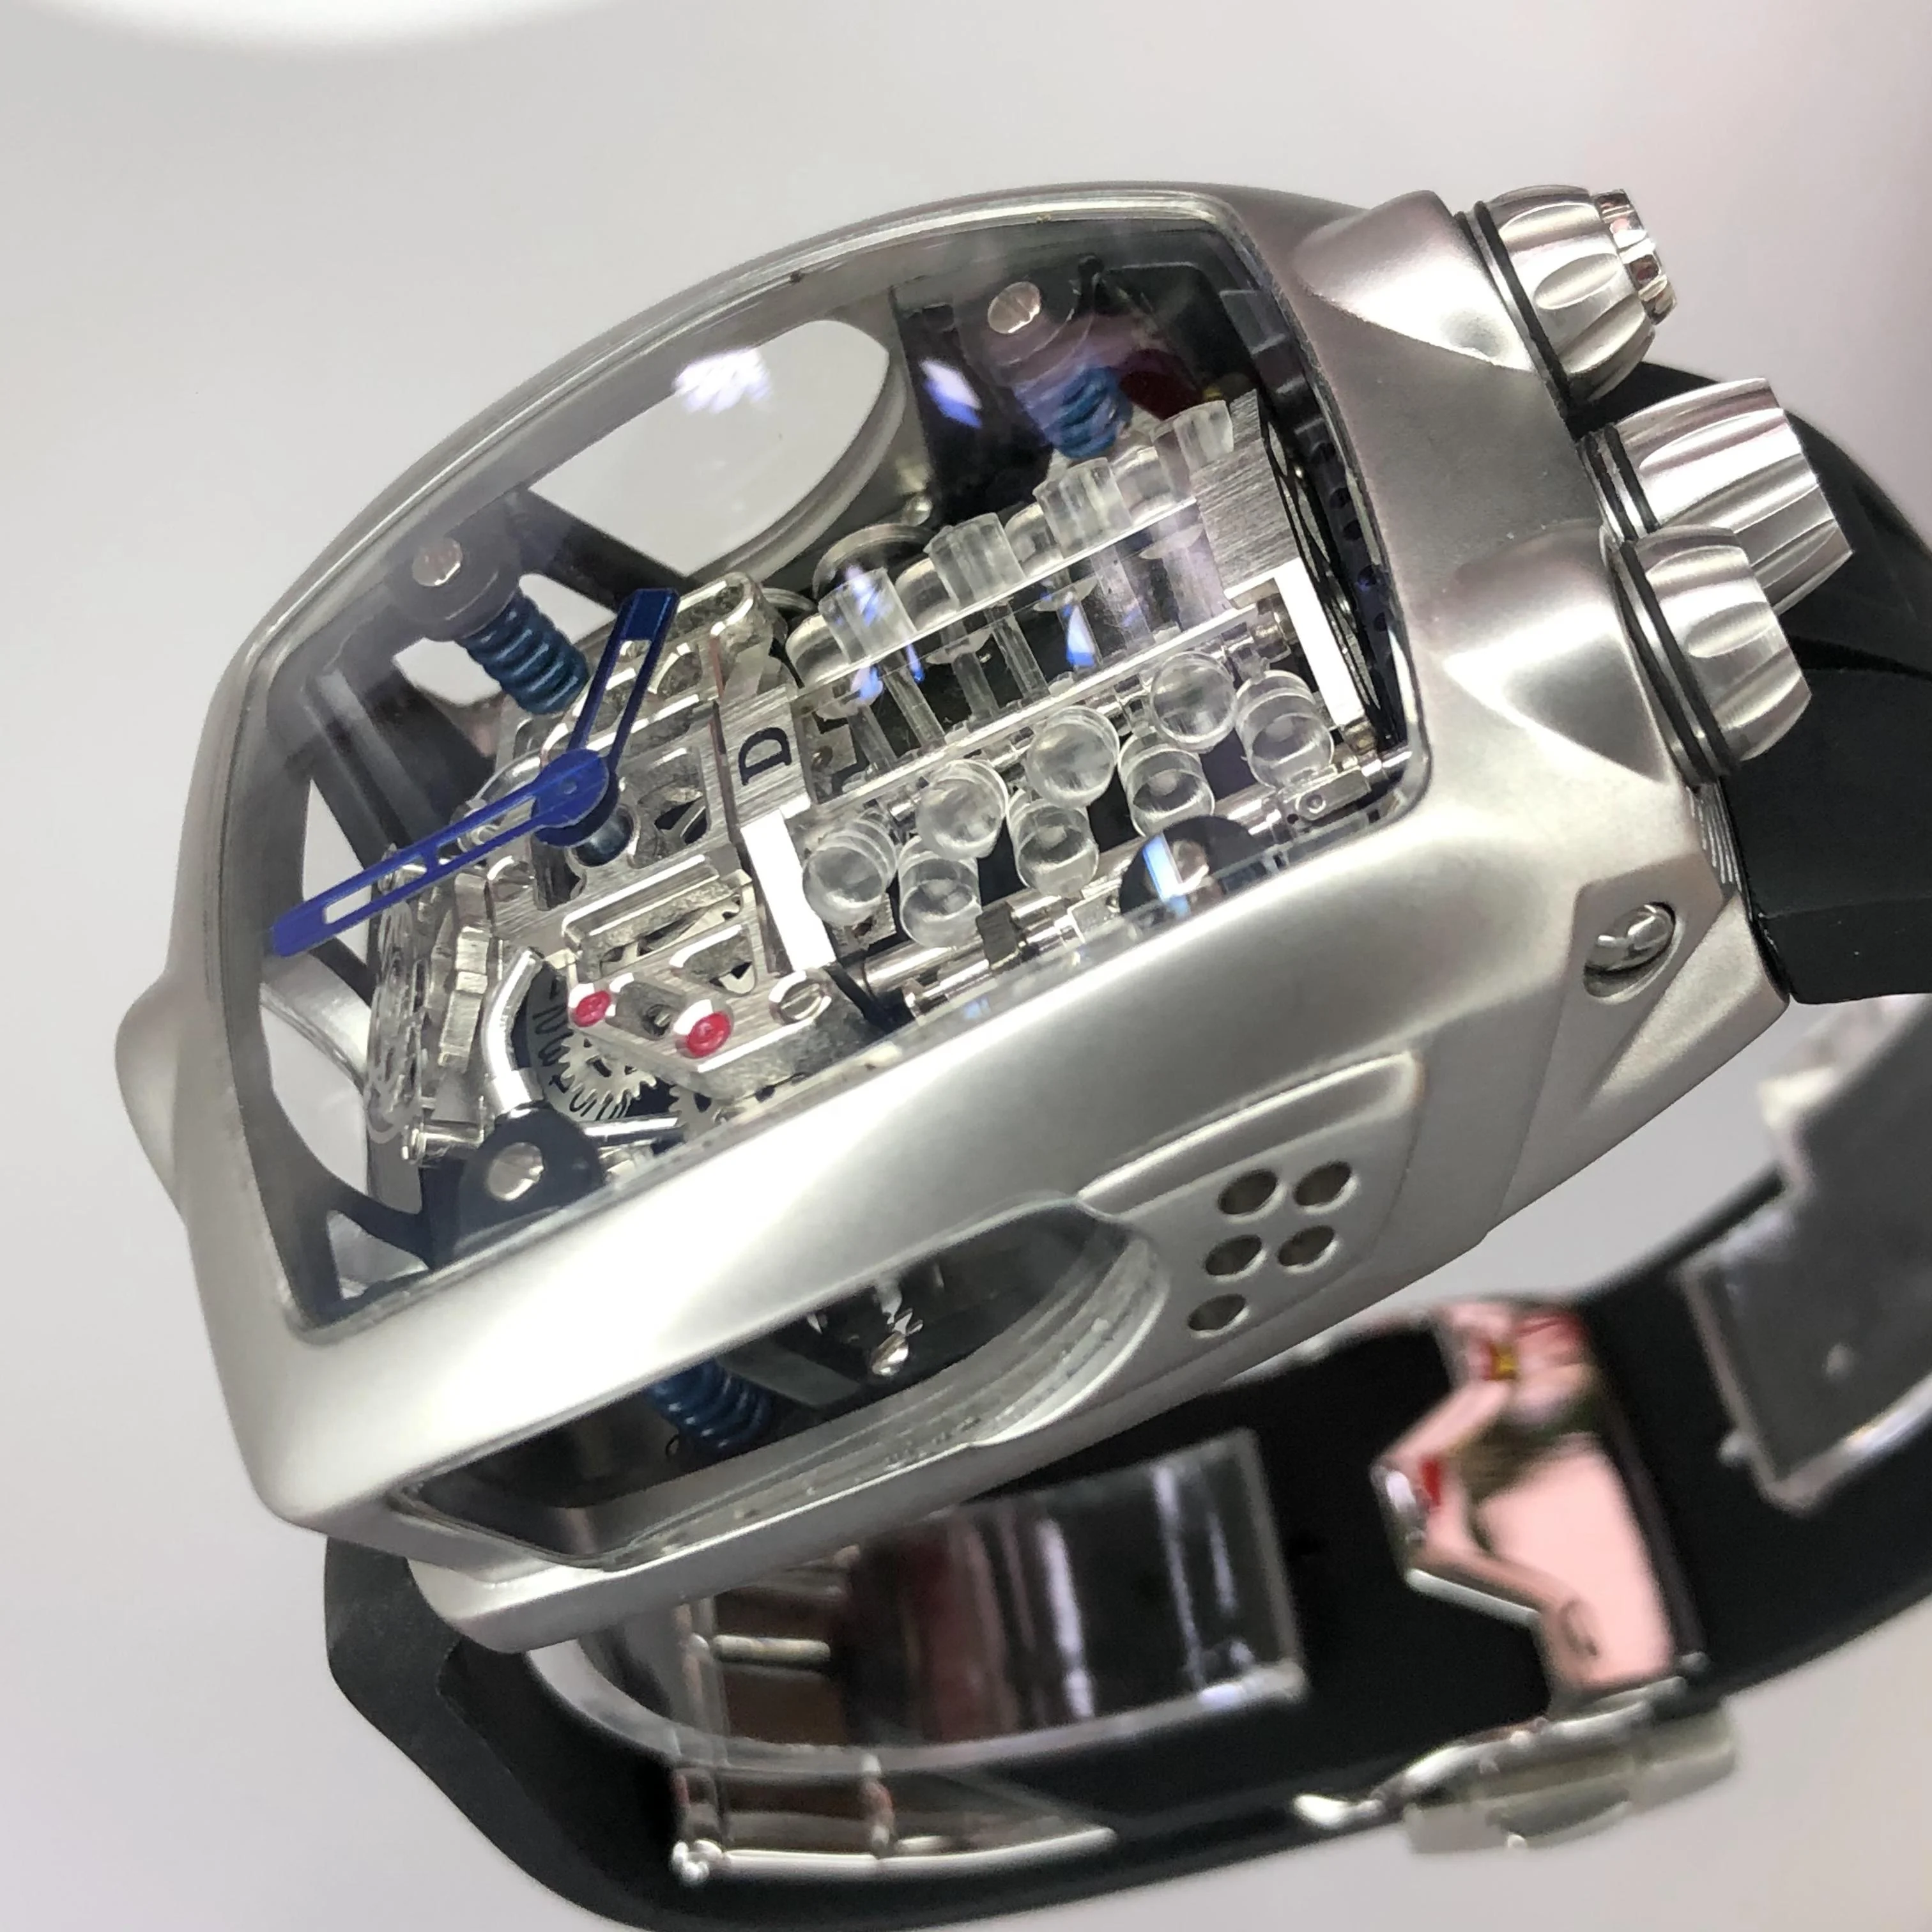 Bugatti Style Luxury Watch Design NH05 Automatic Waterproof Mechanic Sport  | eBay